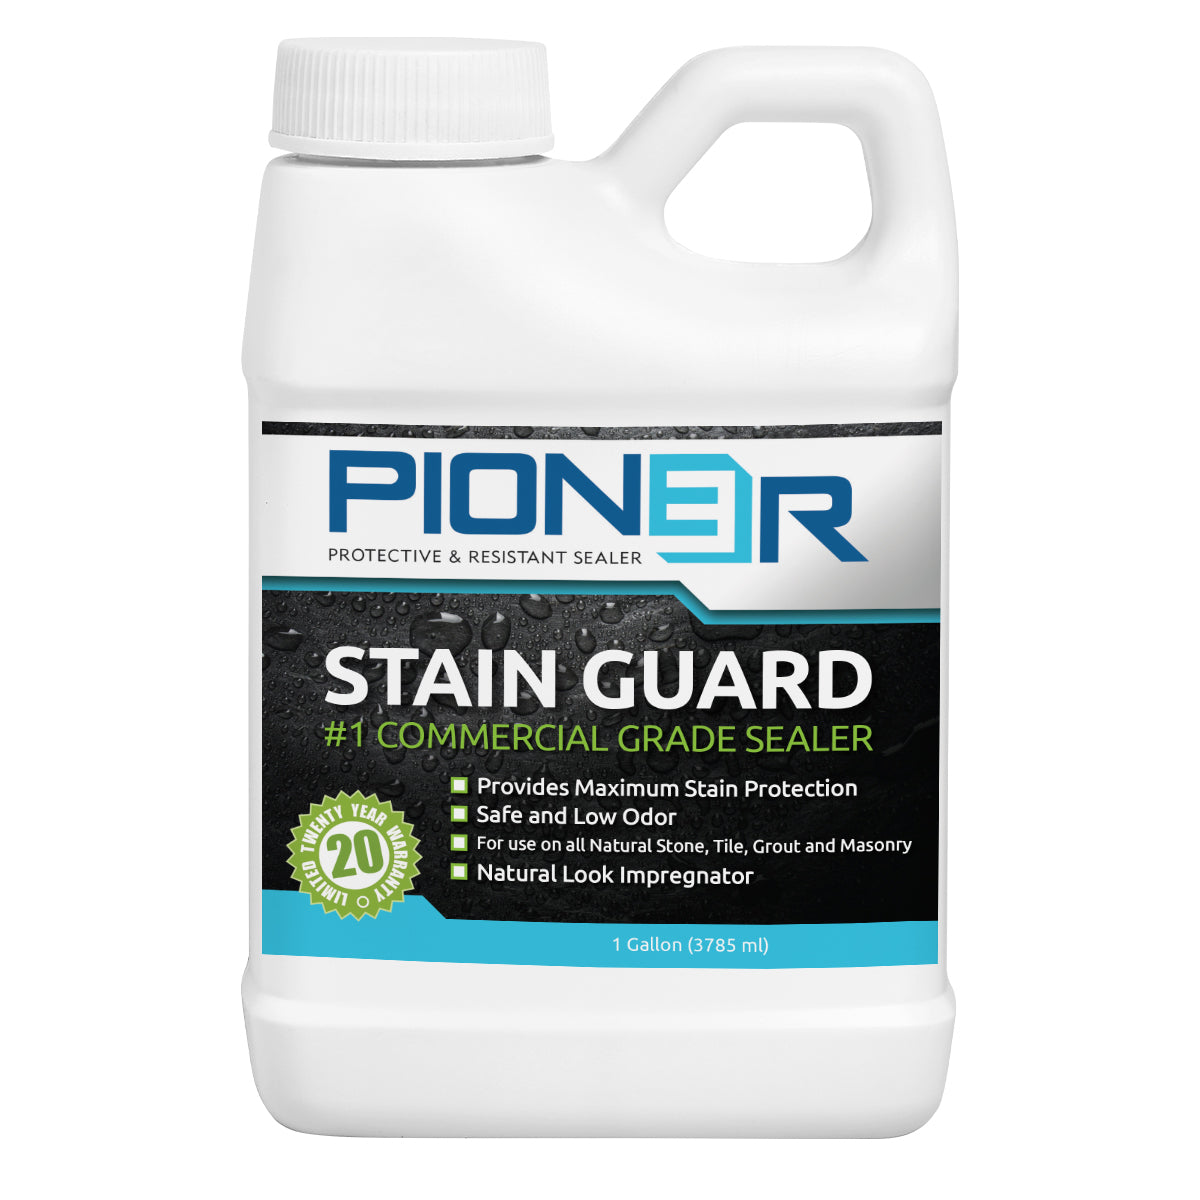 STAIN GUARD – Pioneer Sealer